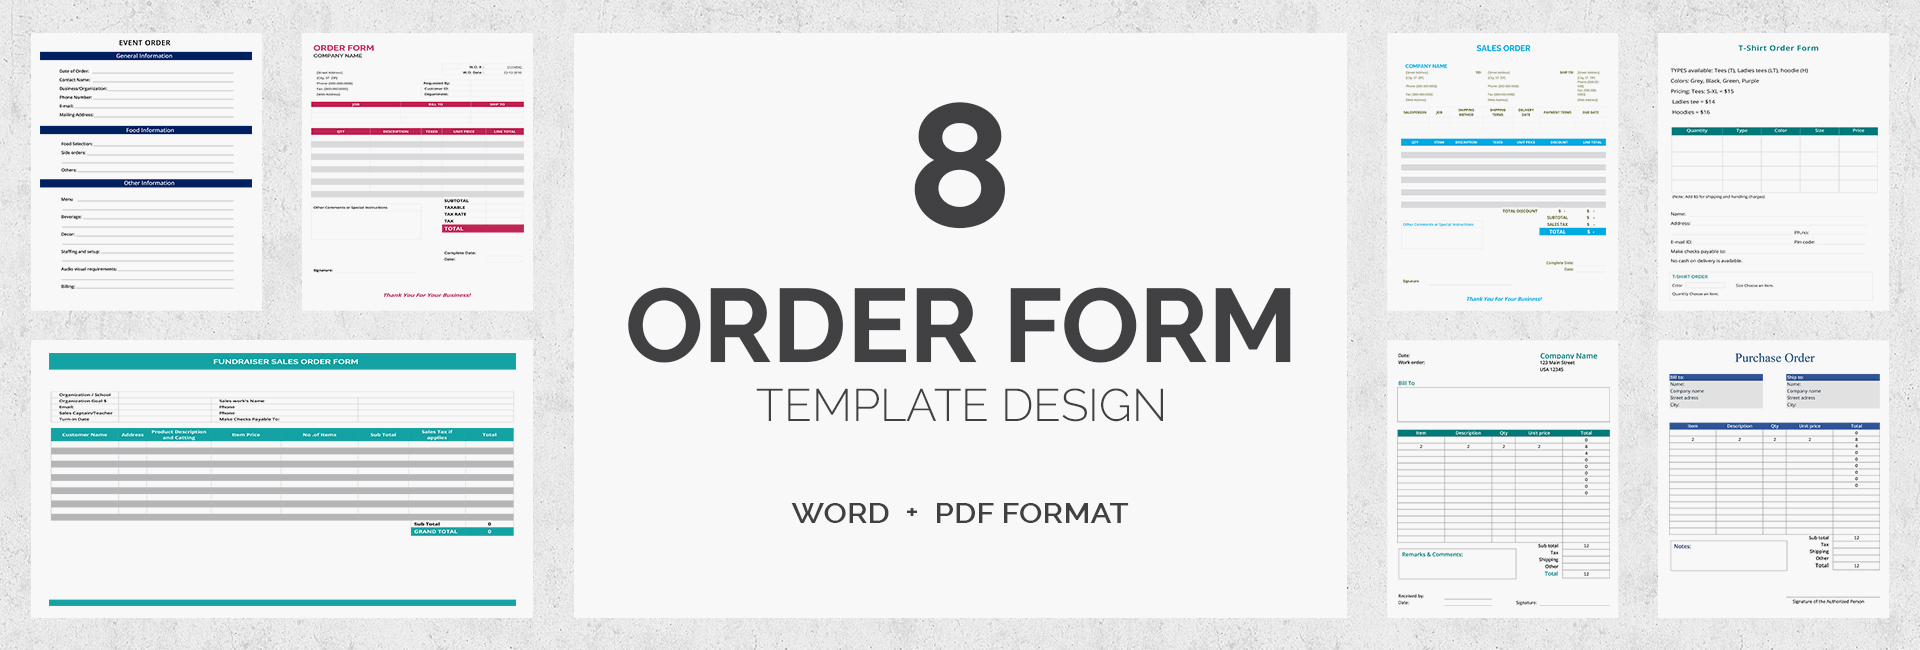 order_formsbundle